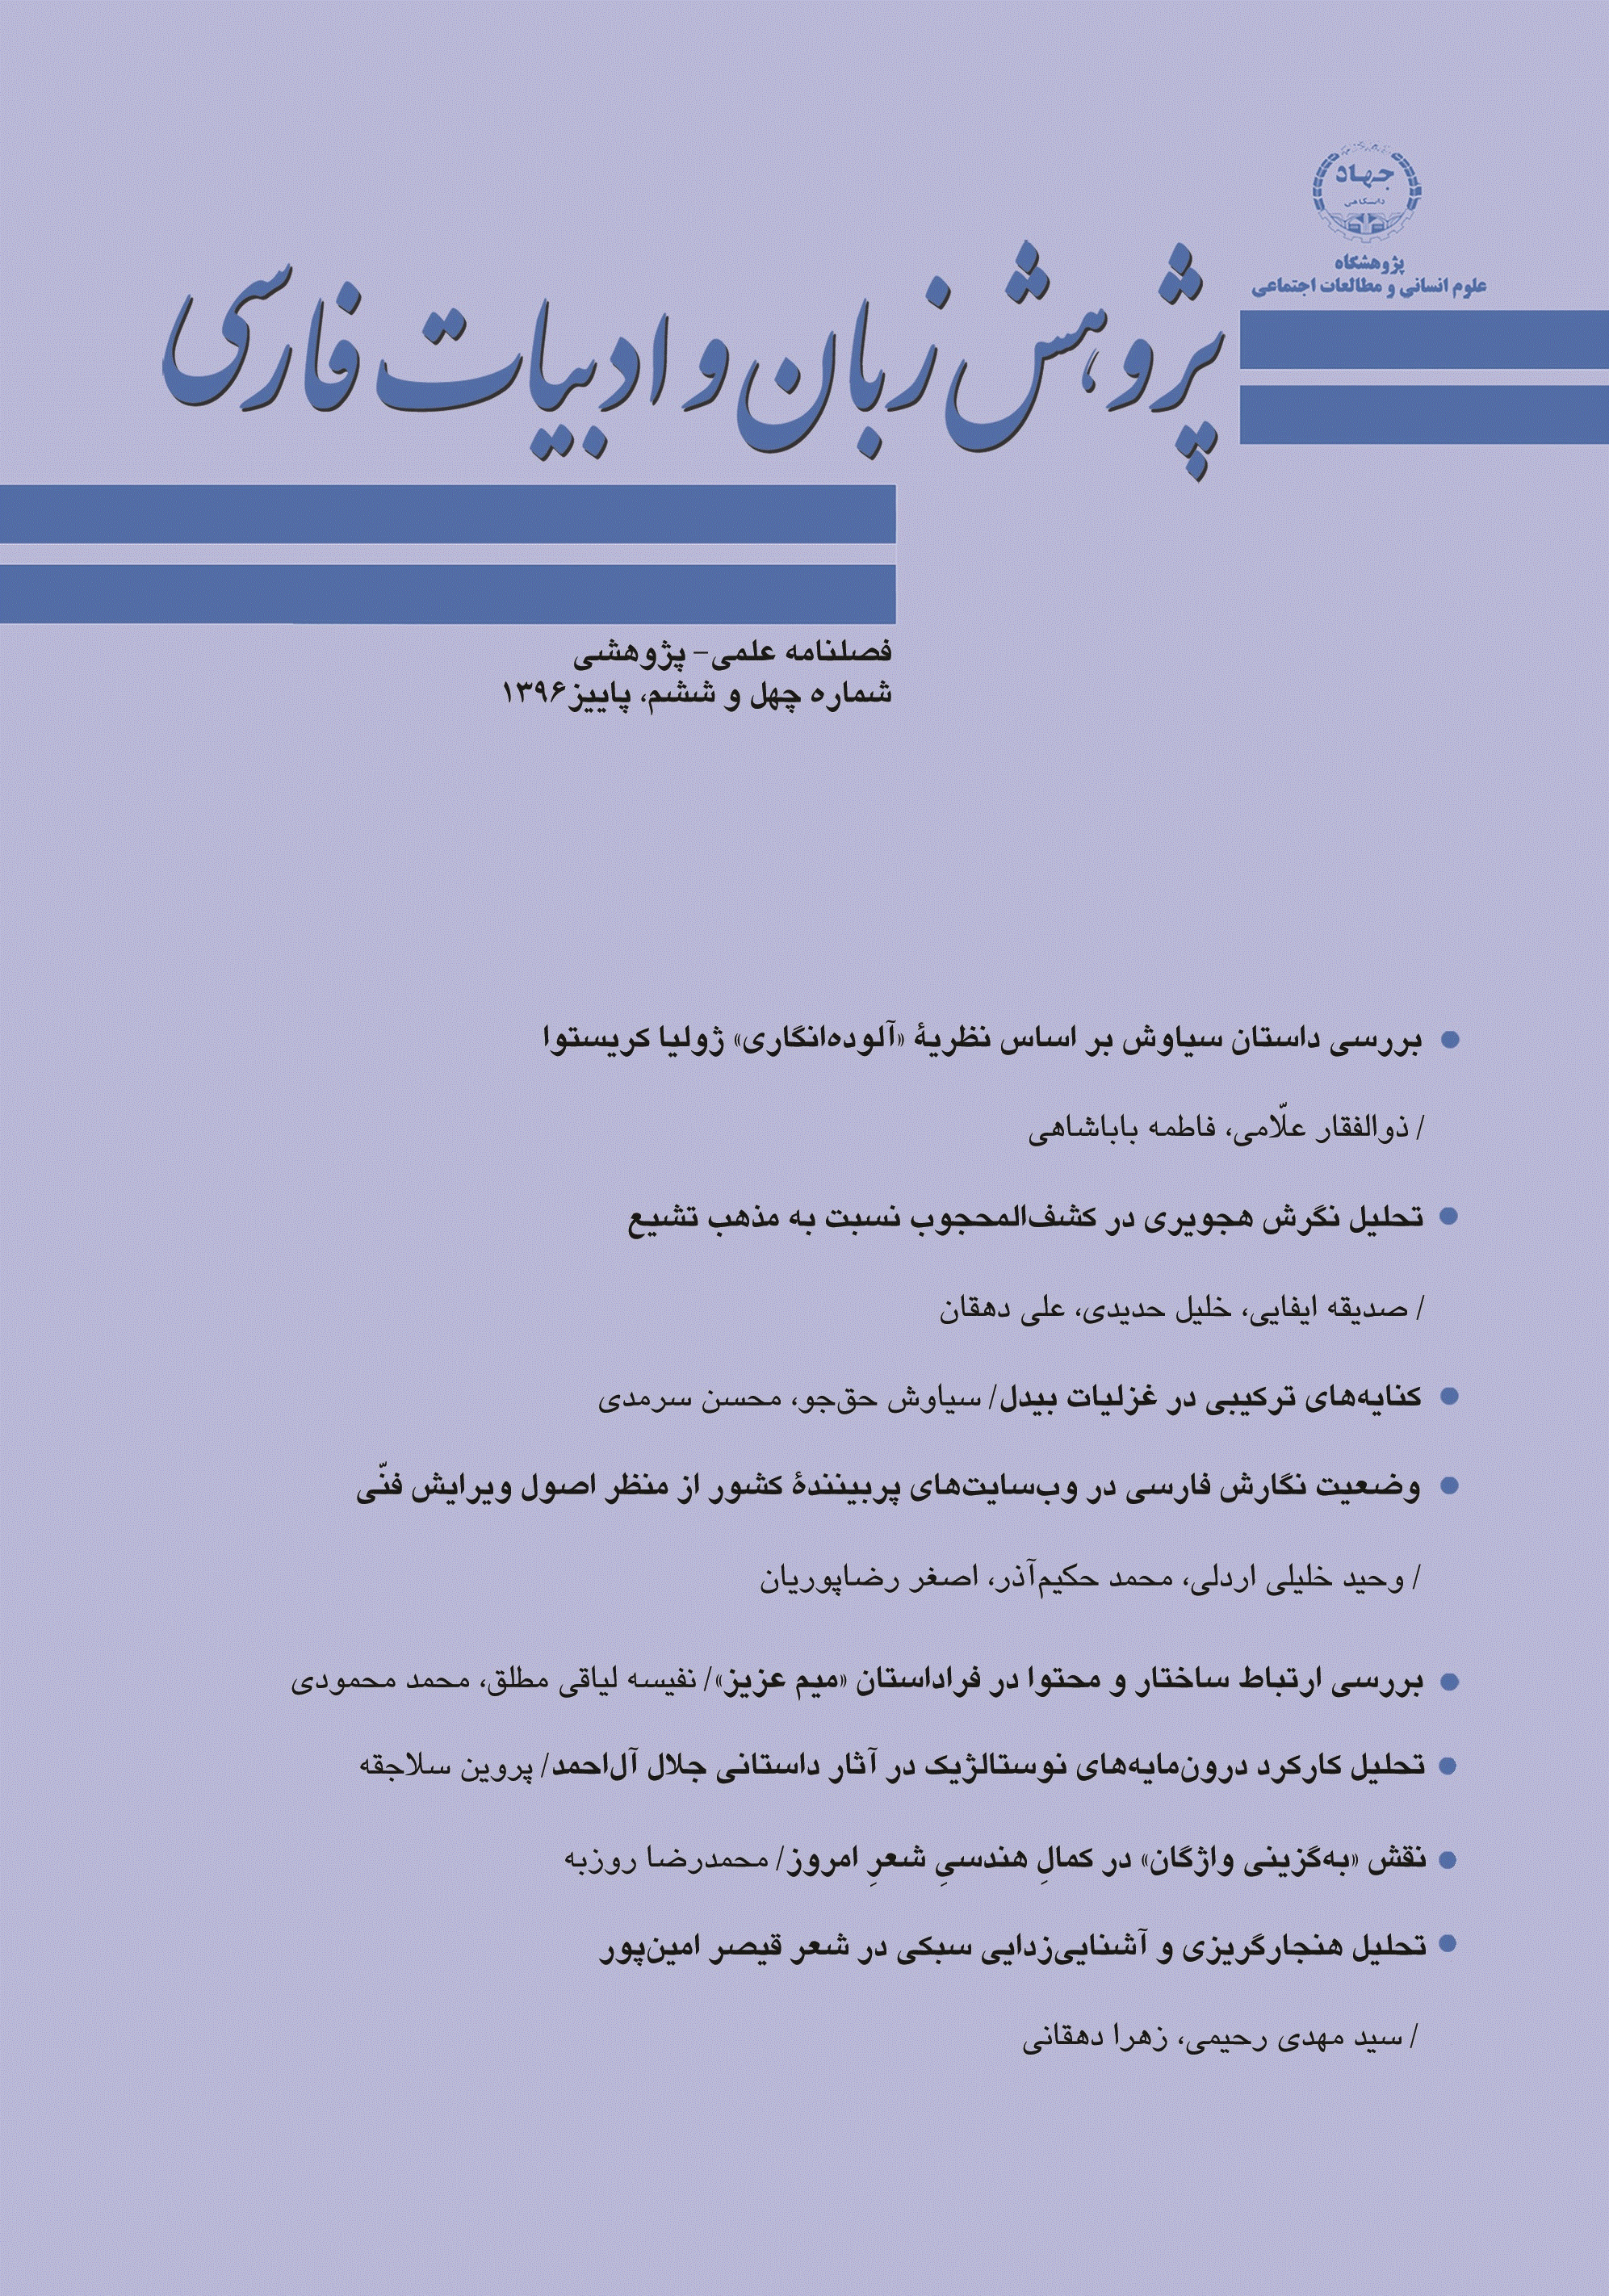 پژوهش زبان و ادبیات فارسی - پاییز 1396 - شماره 46